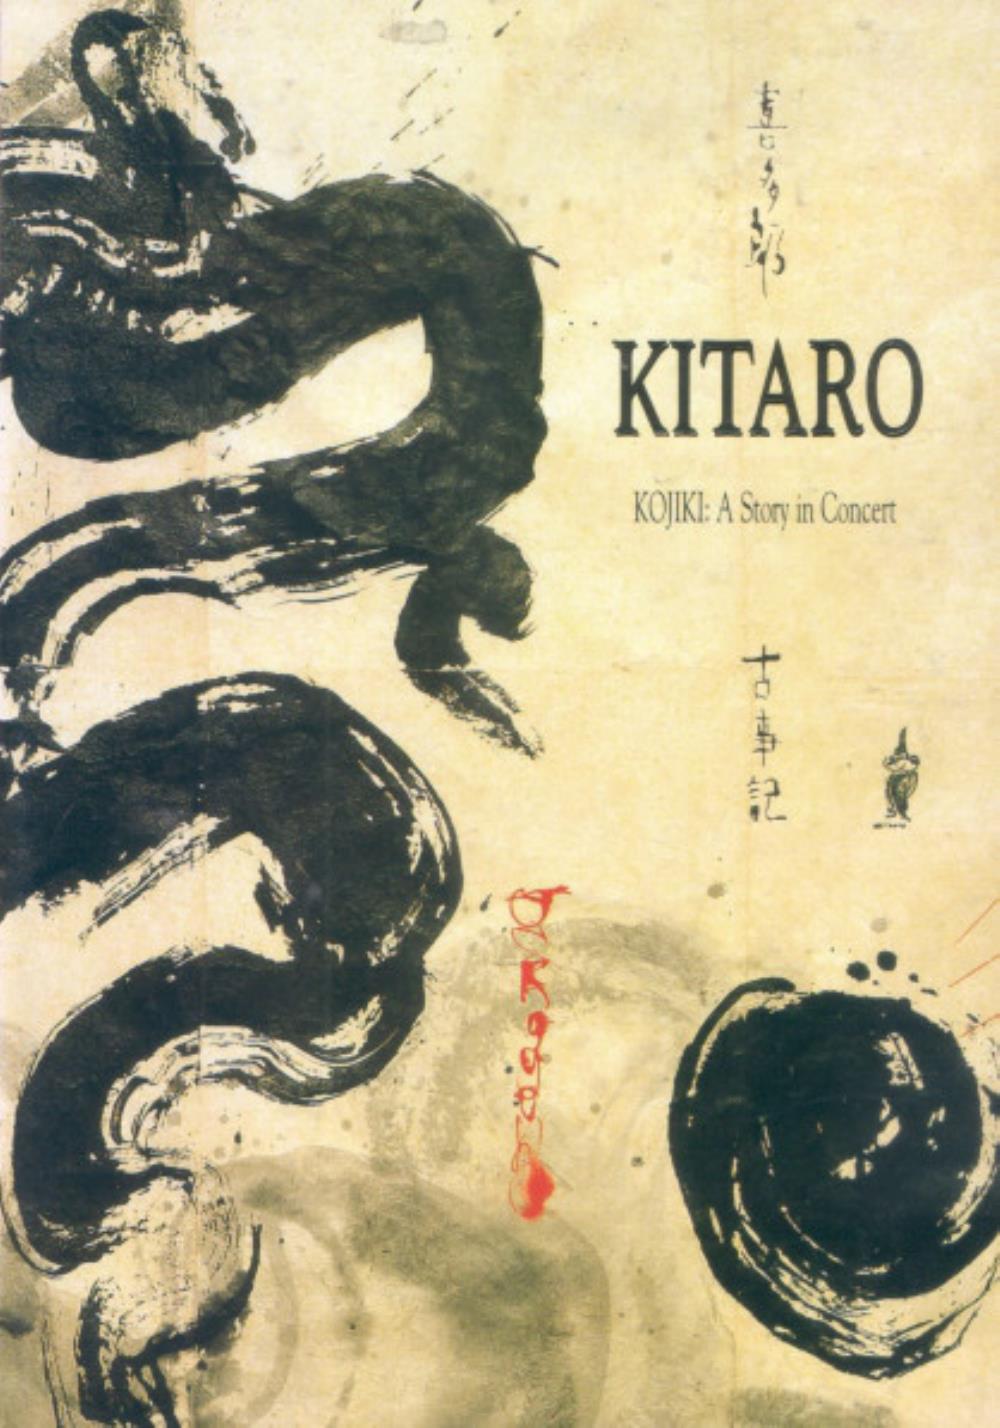 Kitaro Kojiki: A Story in Concert album cover